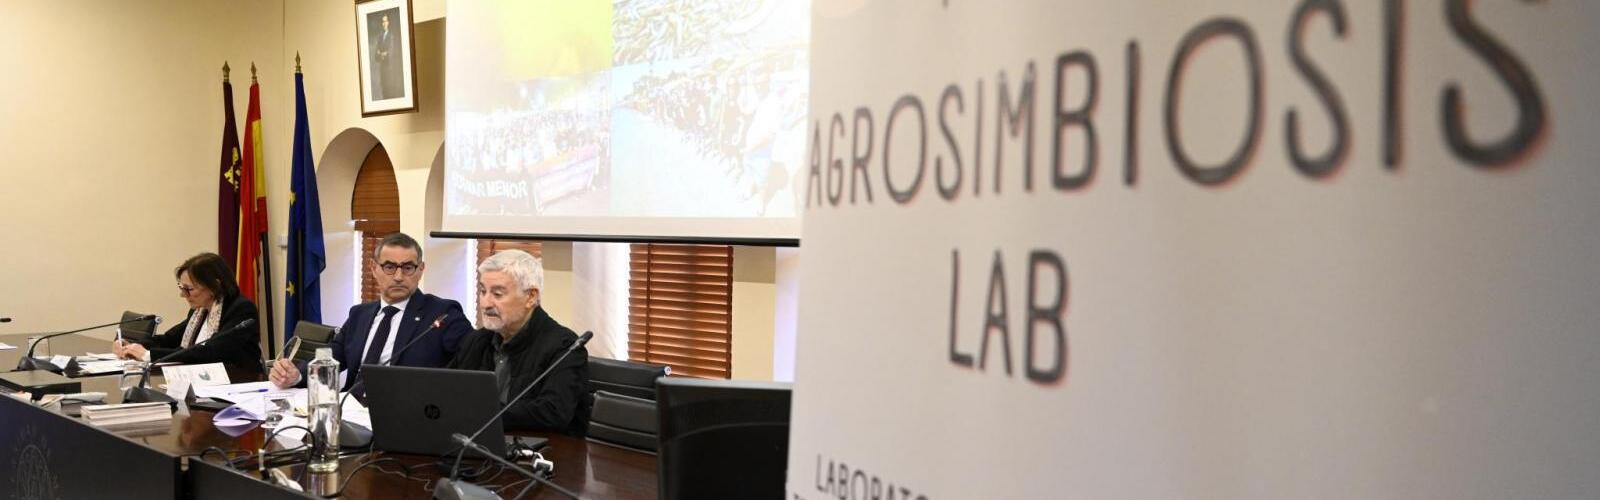 La UMU lidera AgrosimbiosisLab, un proyecto para contribuir a la recuperación del Mar Menor